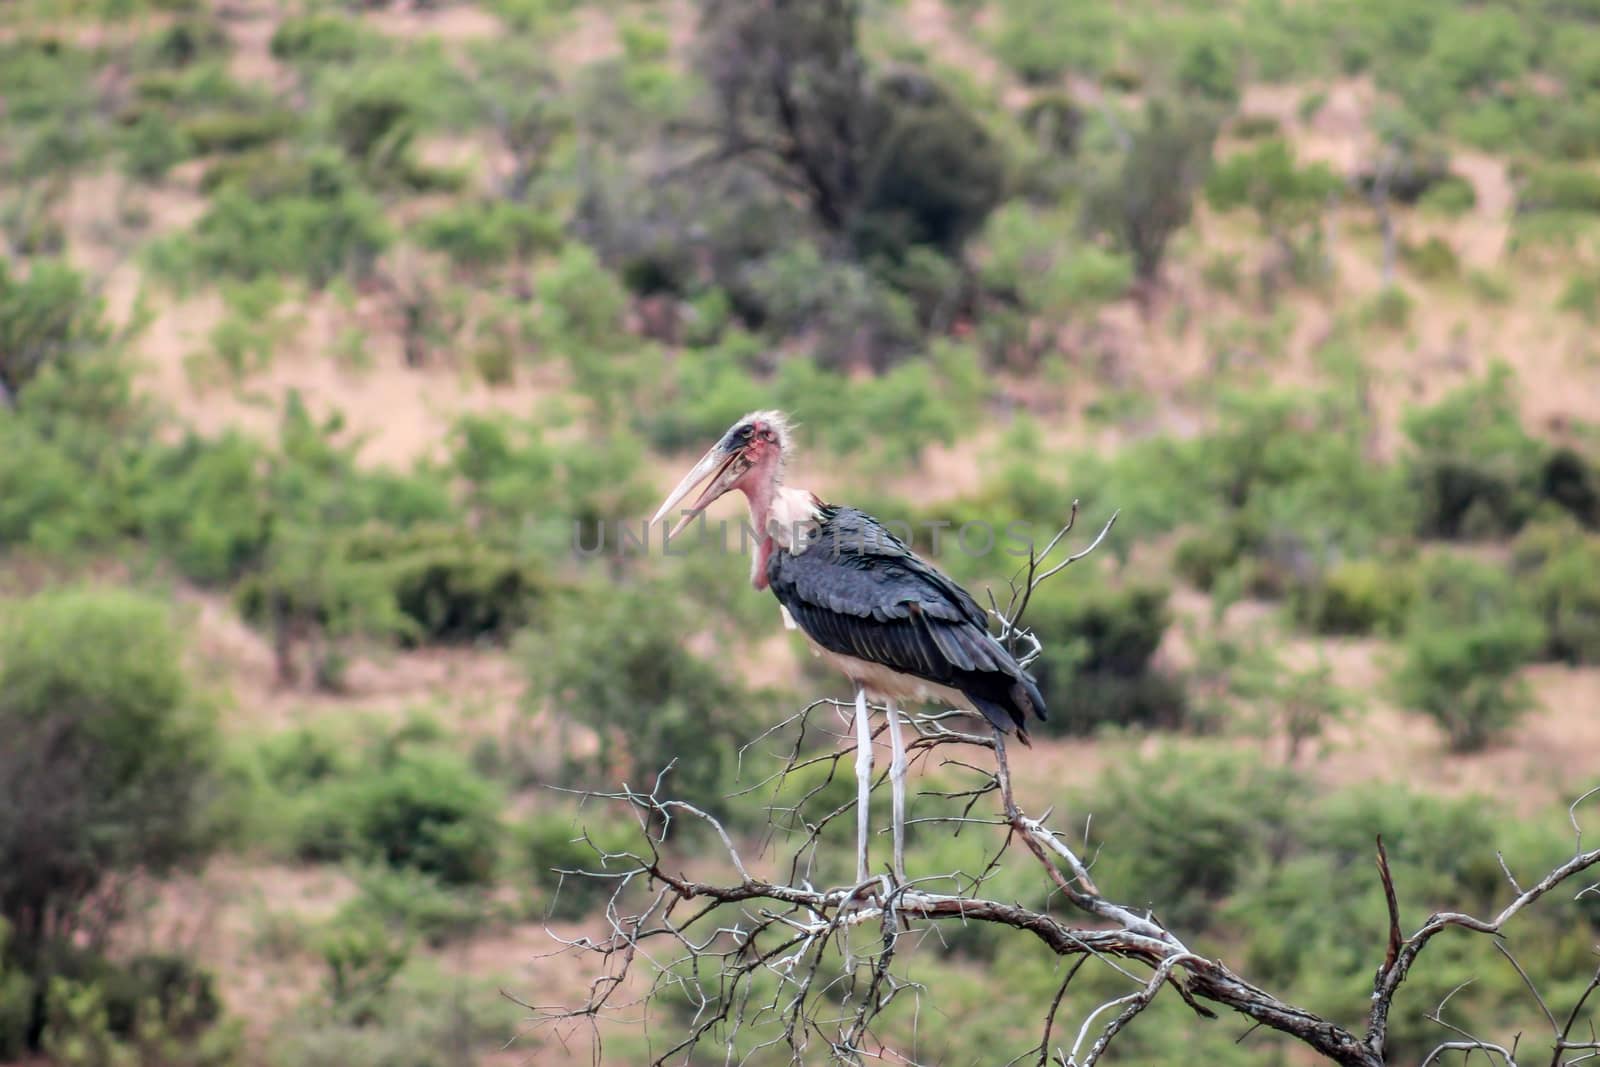 Marabou Stork (Leptoptilos crumenifer) standing on a tree branch